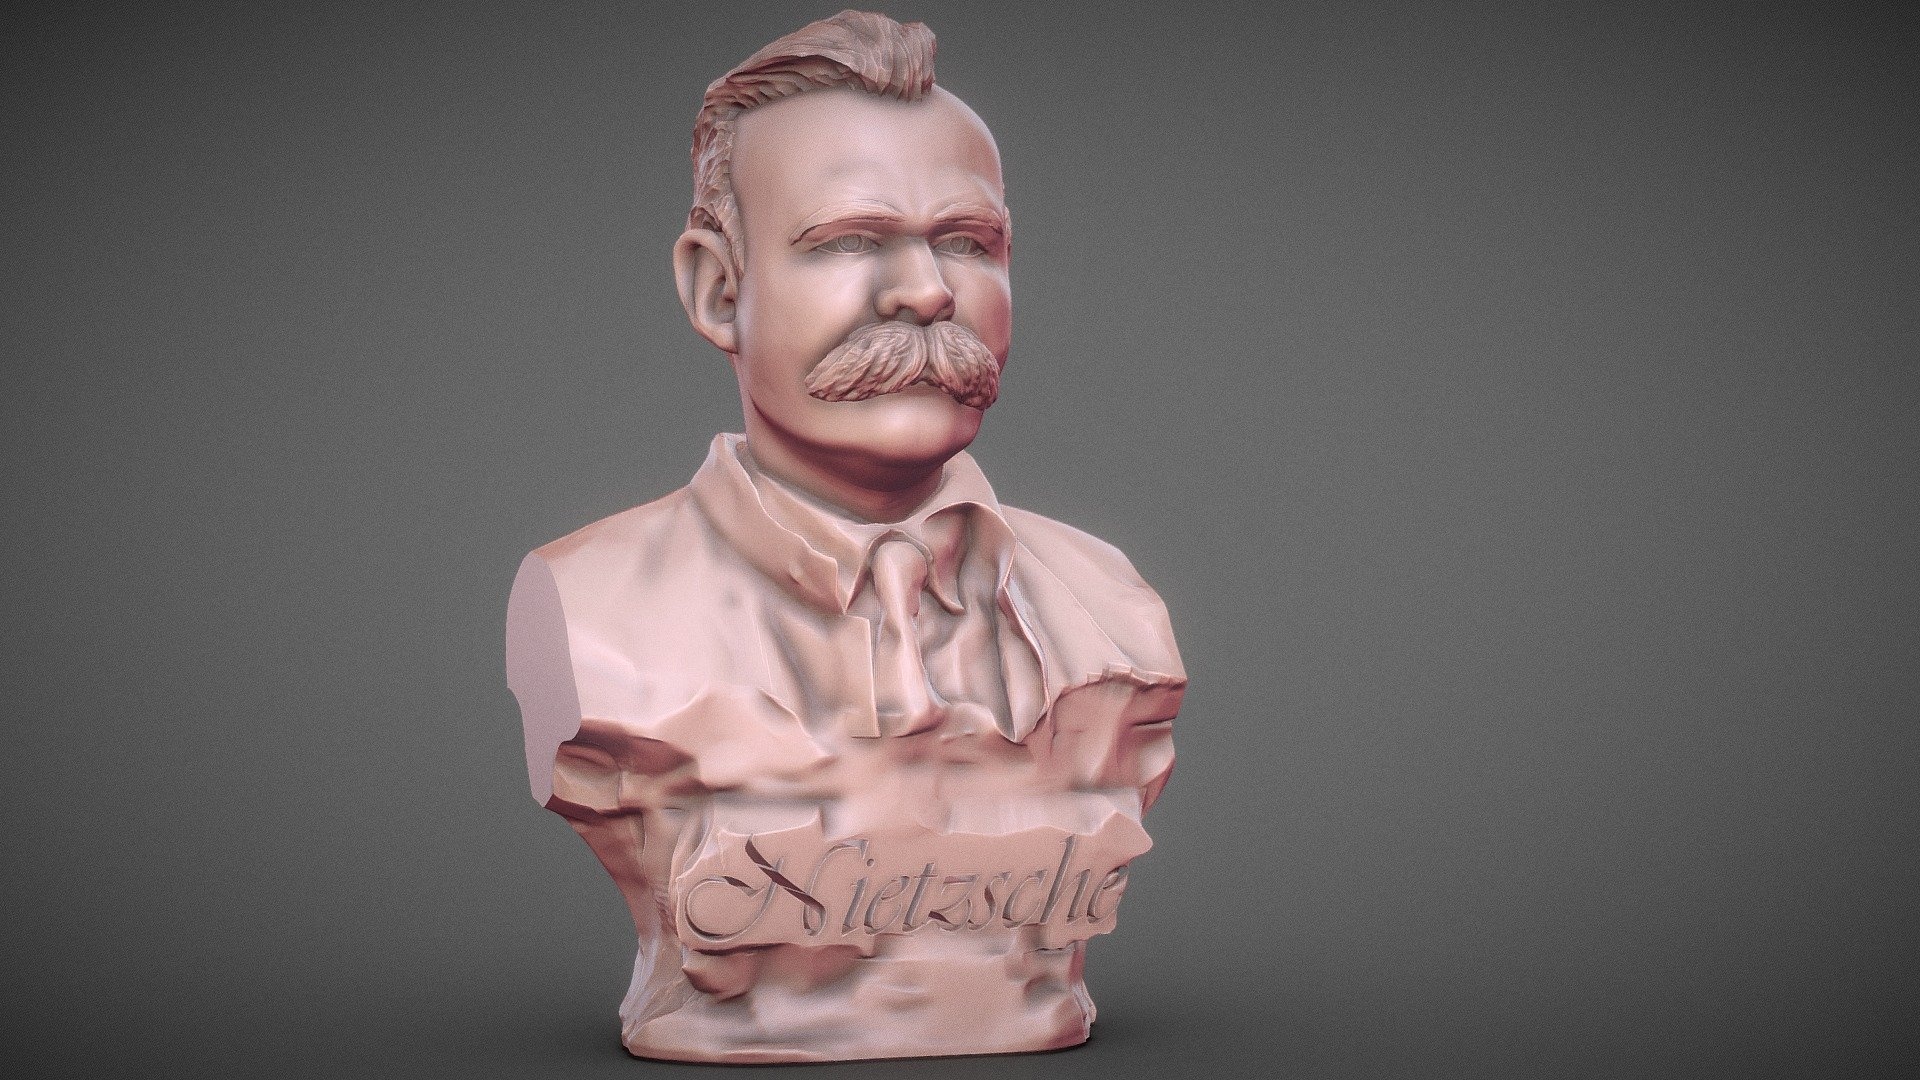 Artstation, Friedrich Nietzsche bust, Printable artwork, Nietzsche's sculpture, 1920x1080 Full HD Desktop